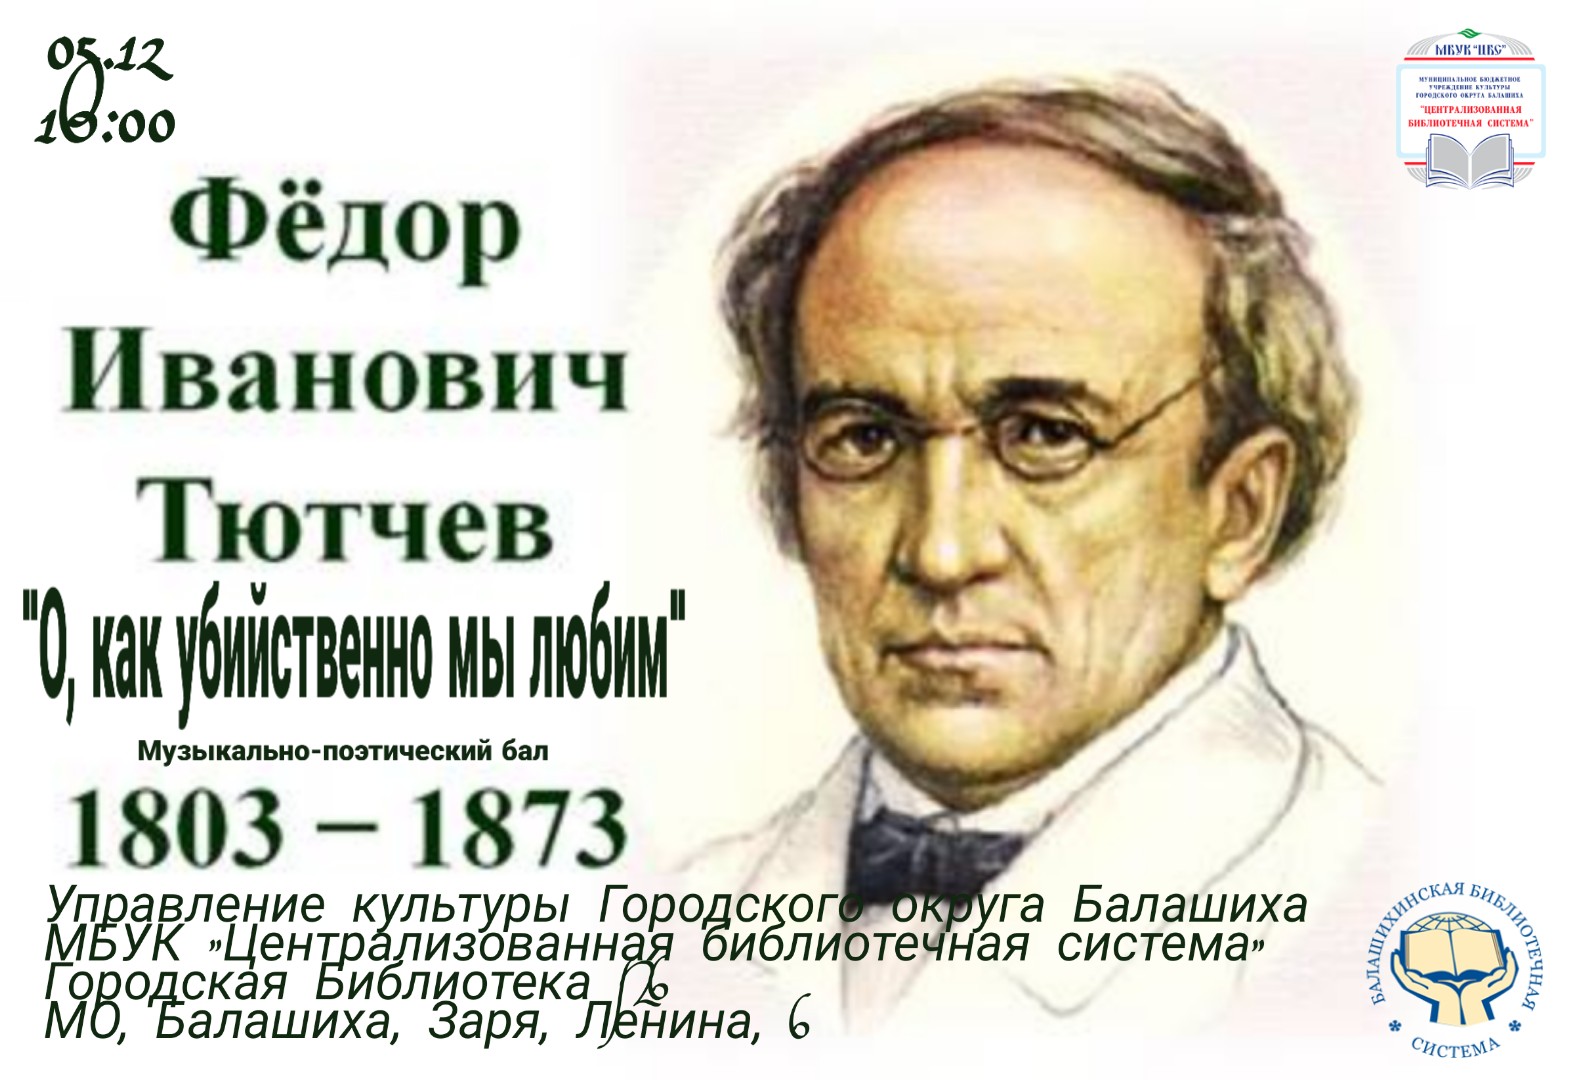 Федор Иванович Тютчев (1803—1873)